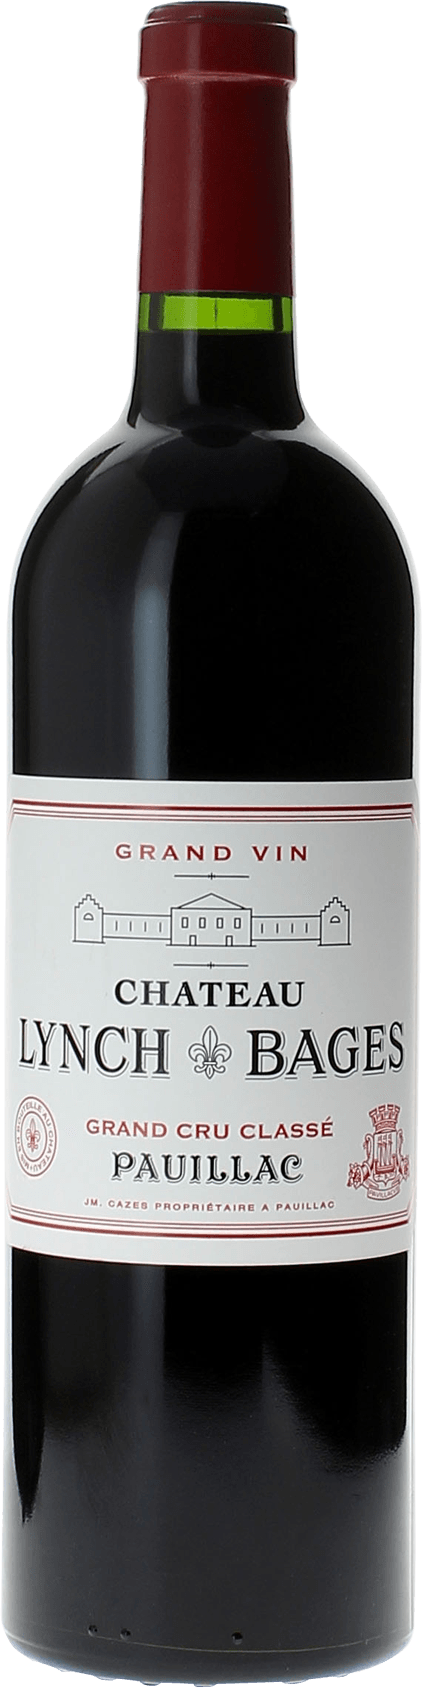 Lynch bages 1986 5 me Grand cru class Pauillac, Bordeaux rouge